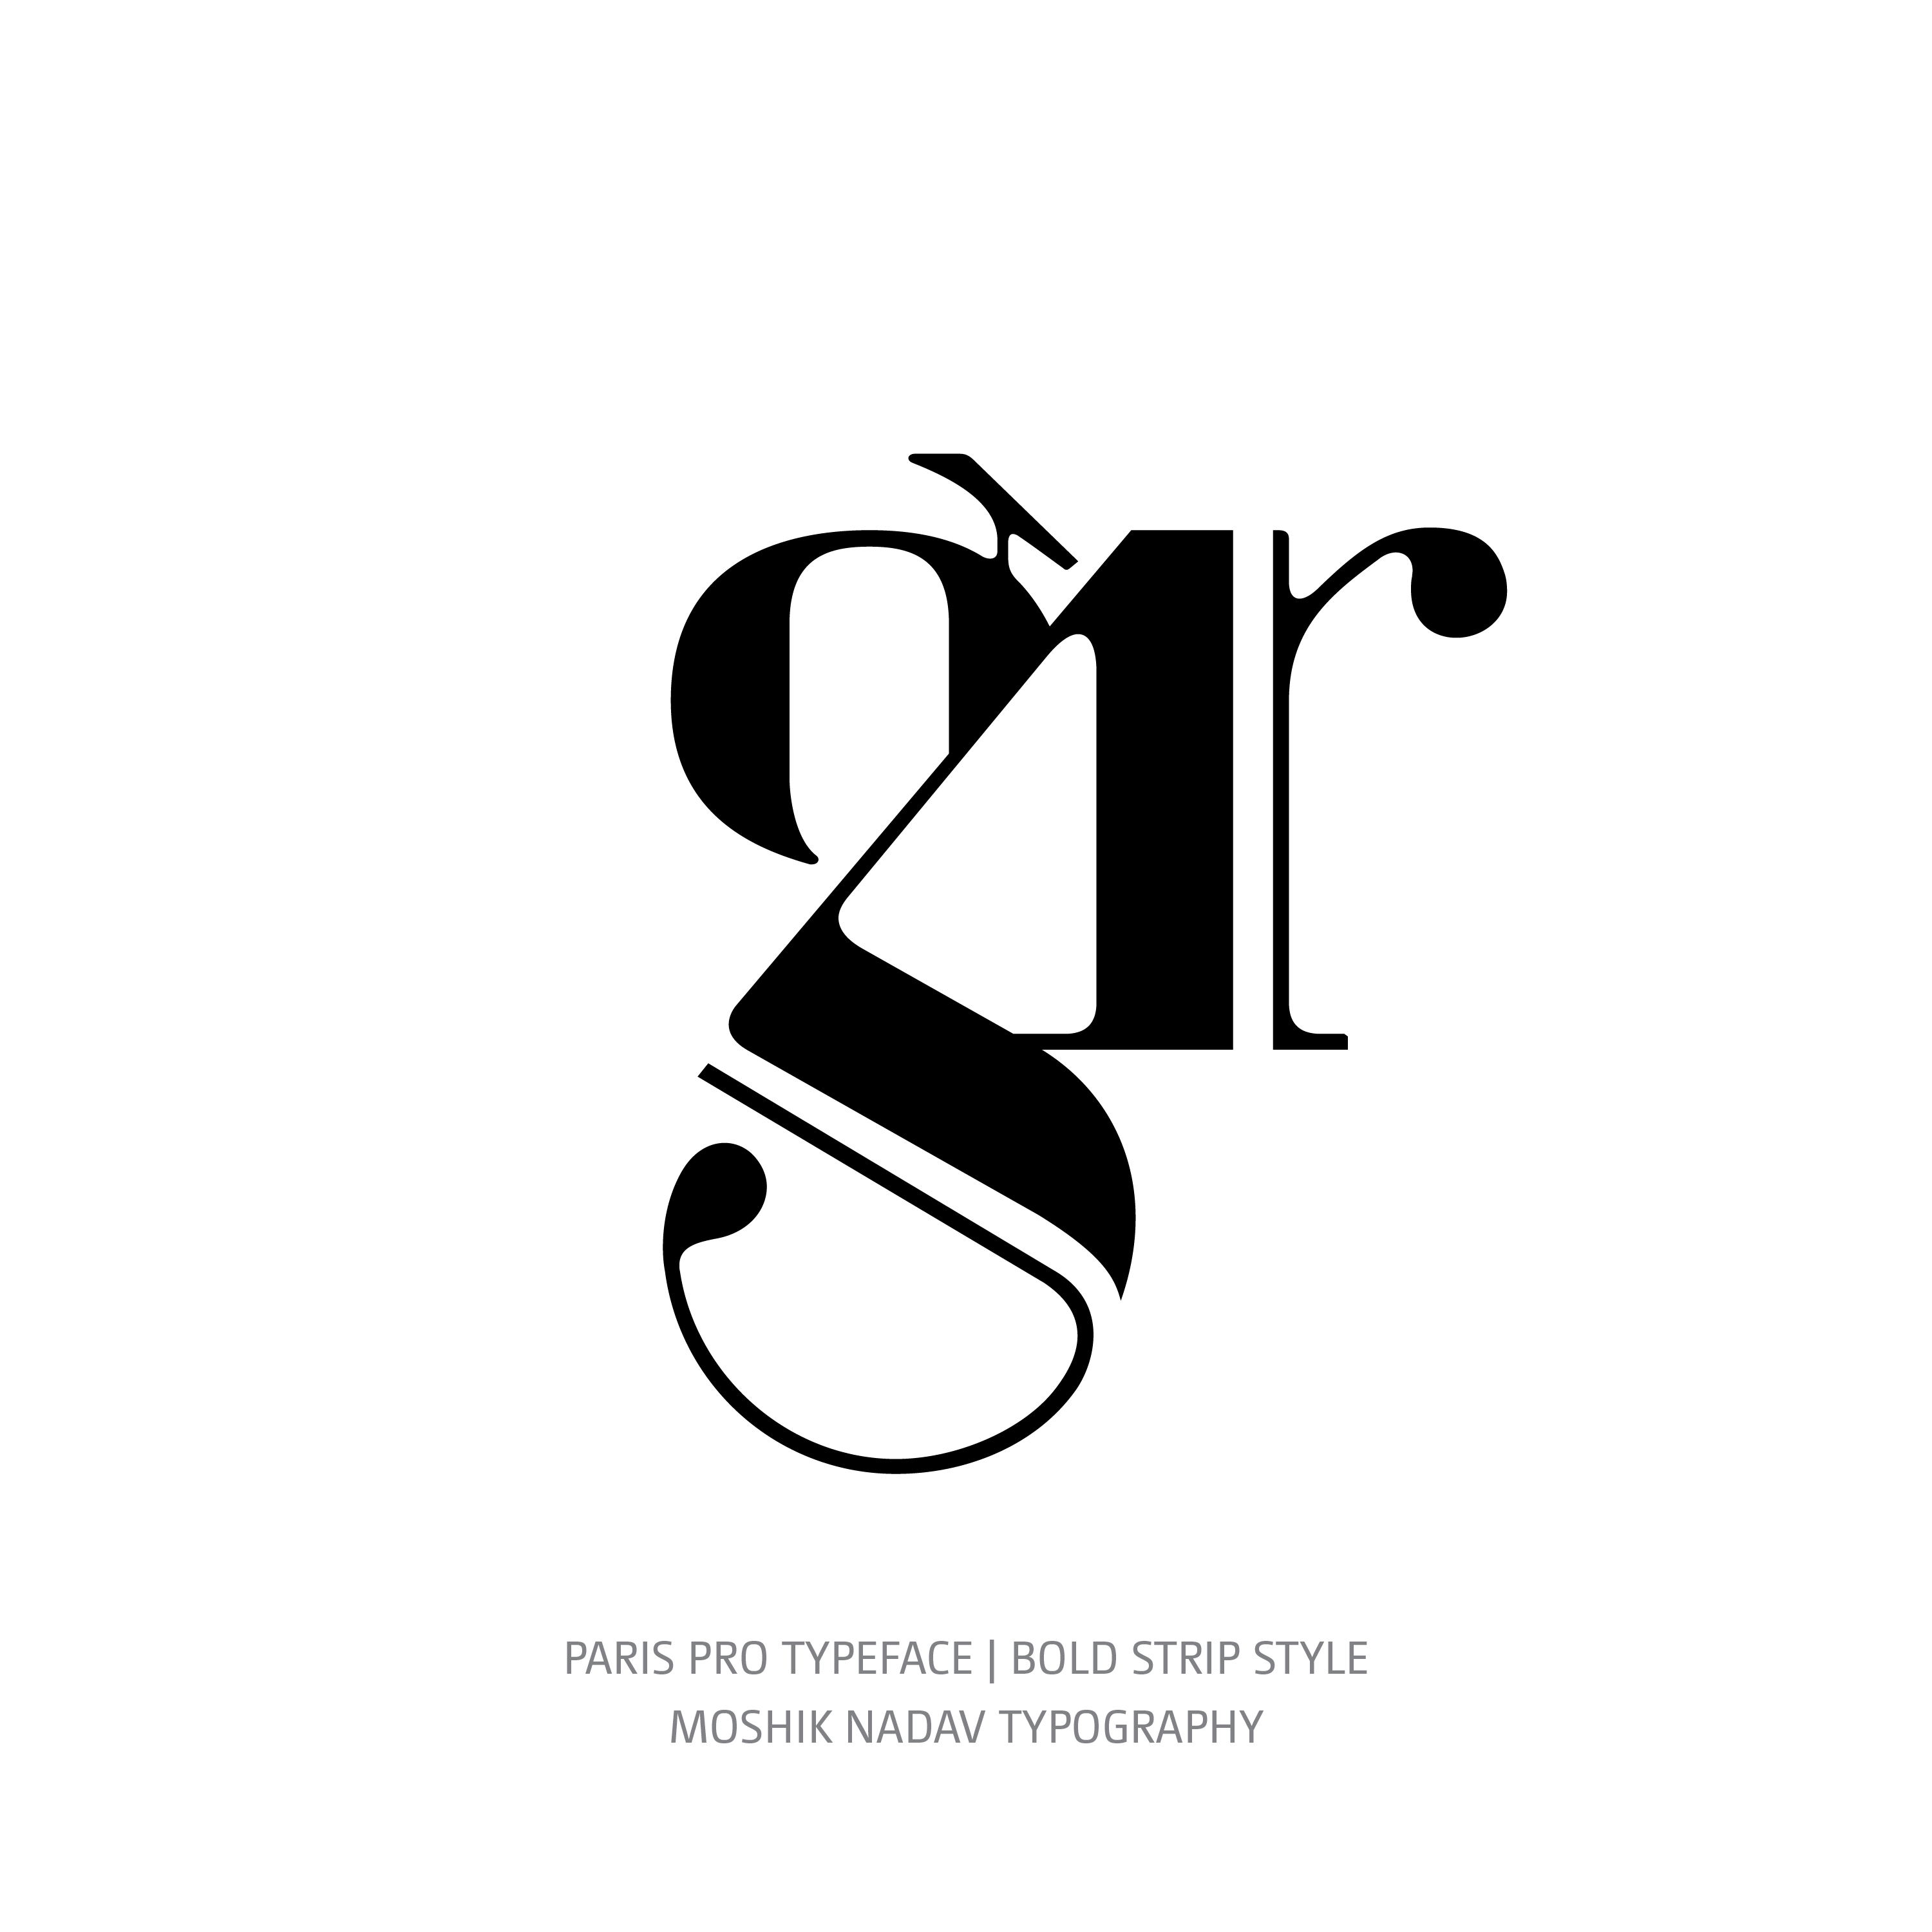 Paris Pro Typeface Bold Strip gr ligature